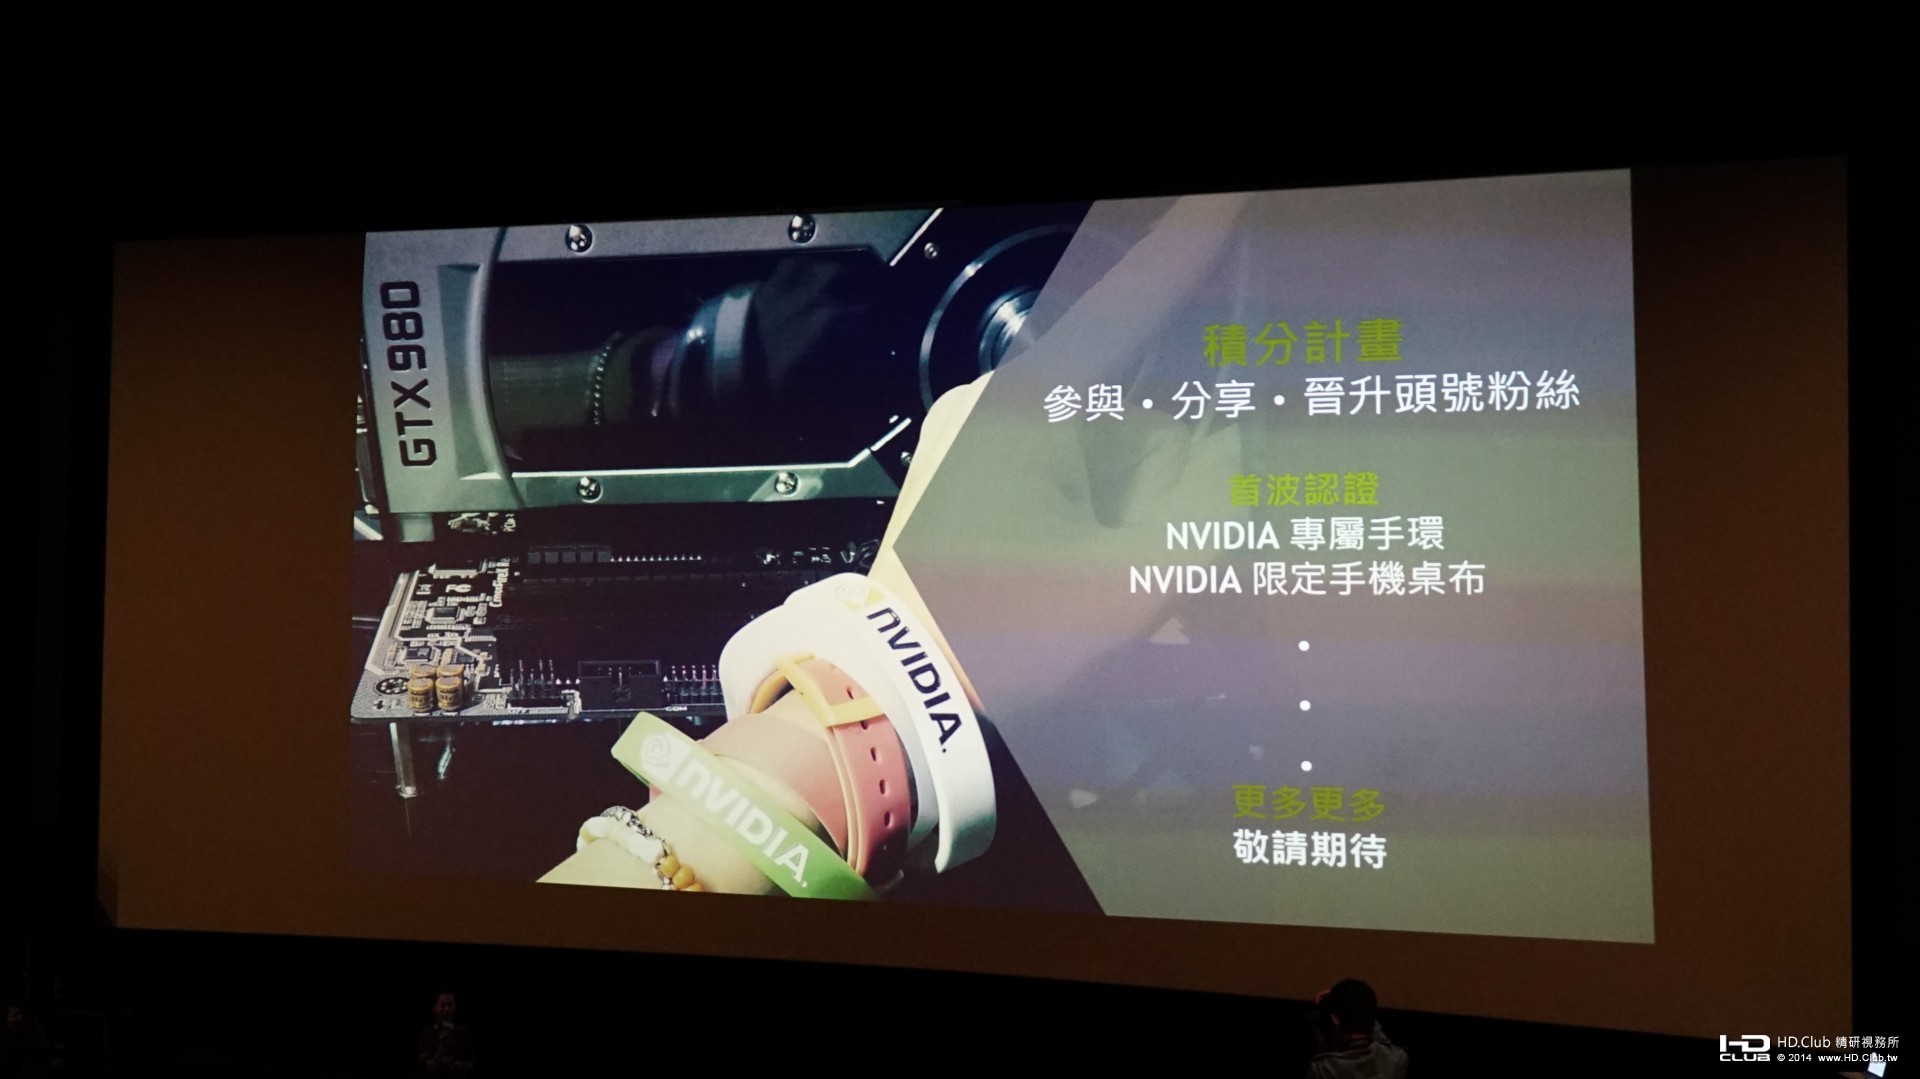 Nvidia_Movie_Day_19.jpg